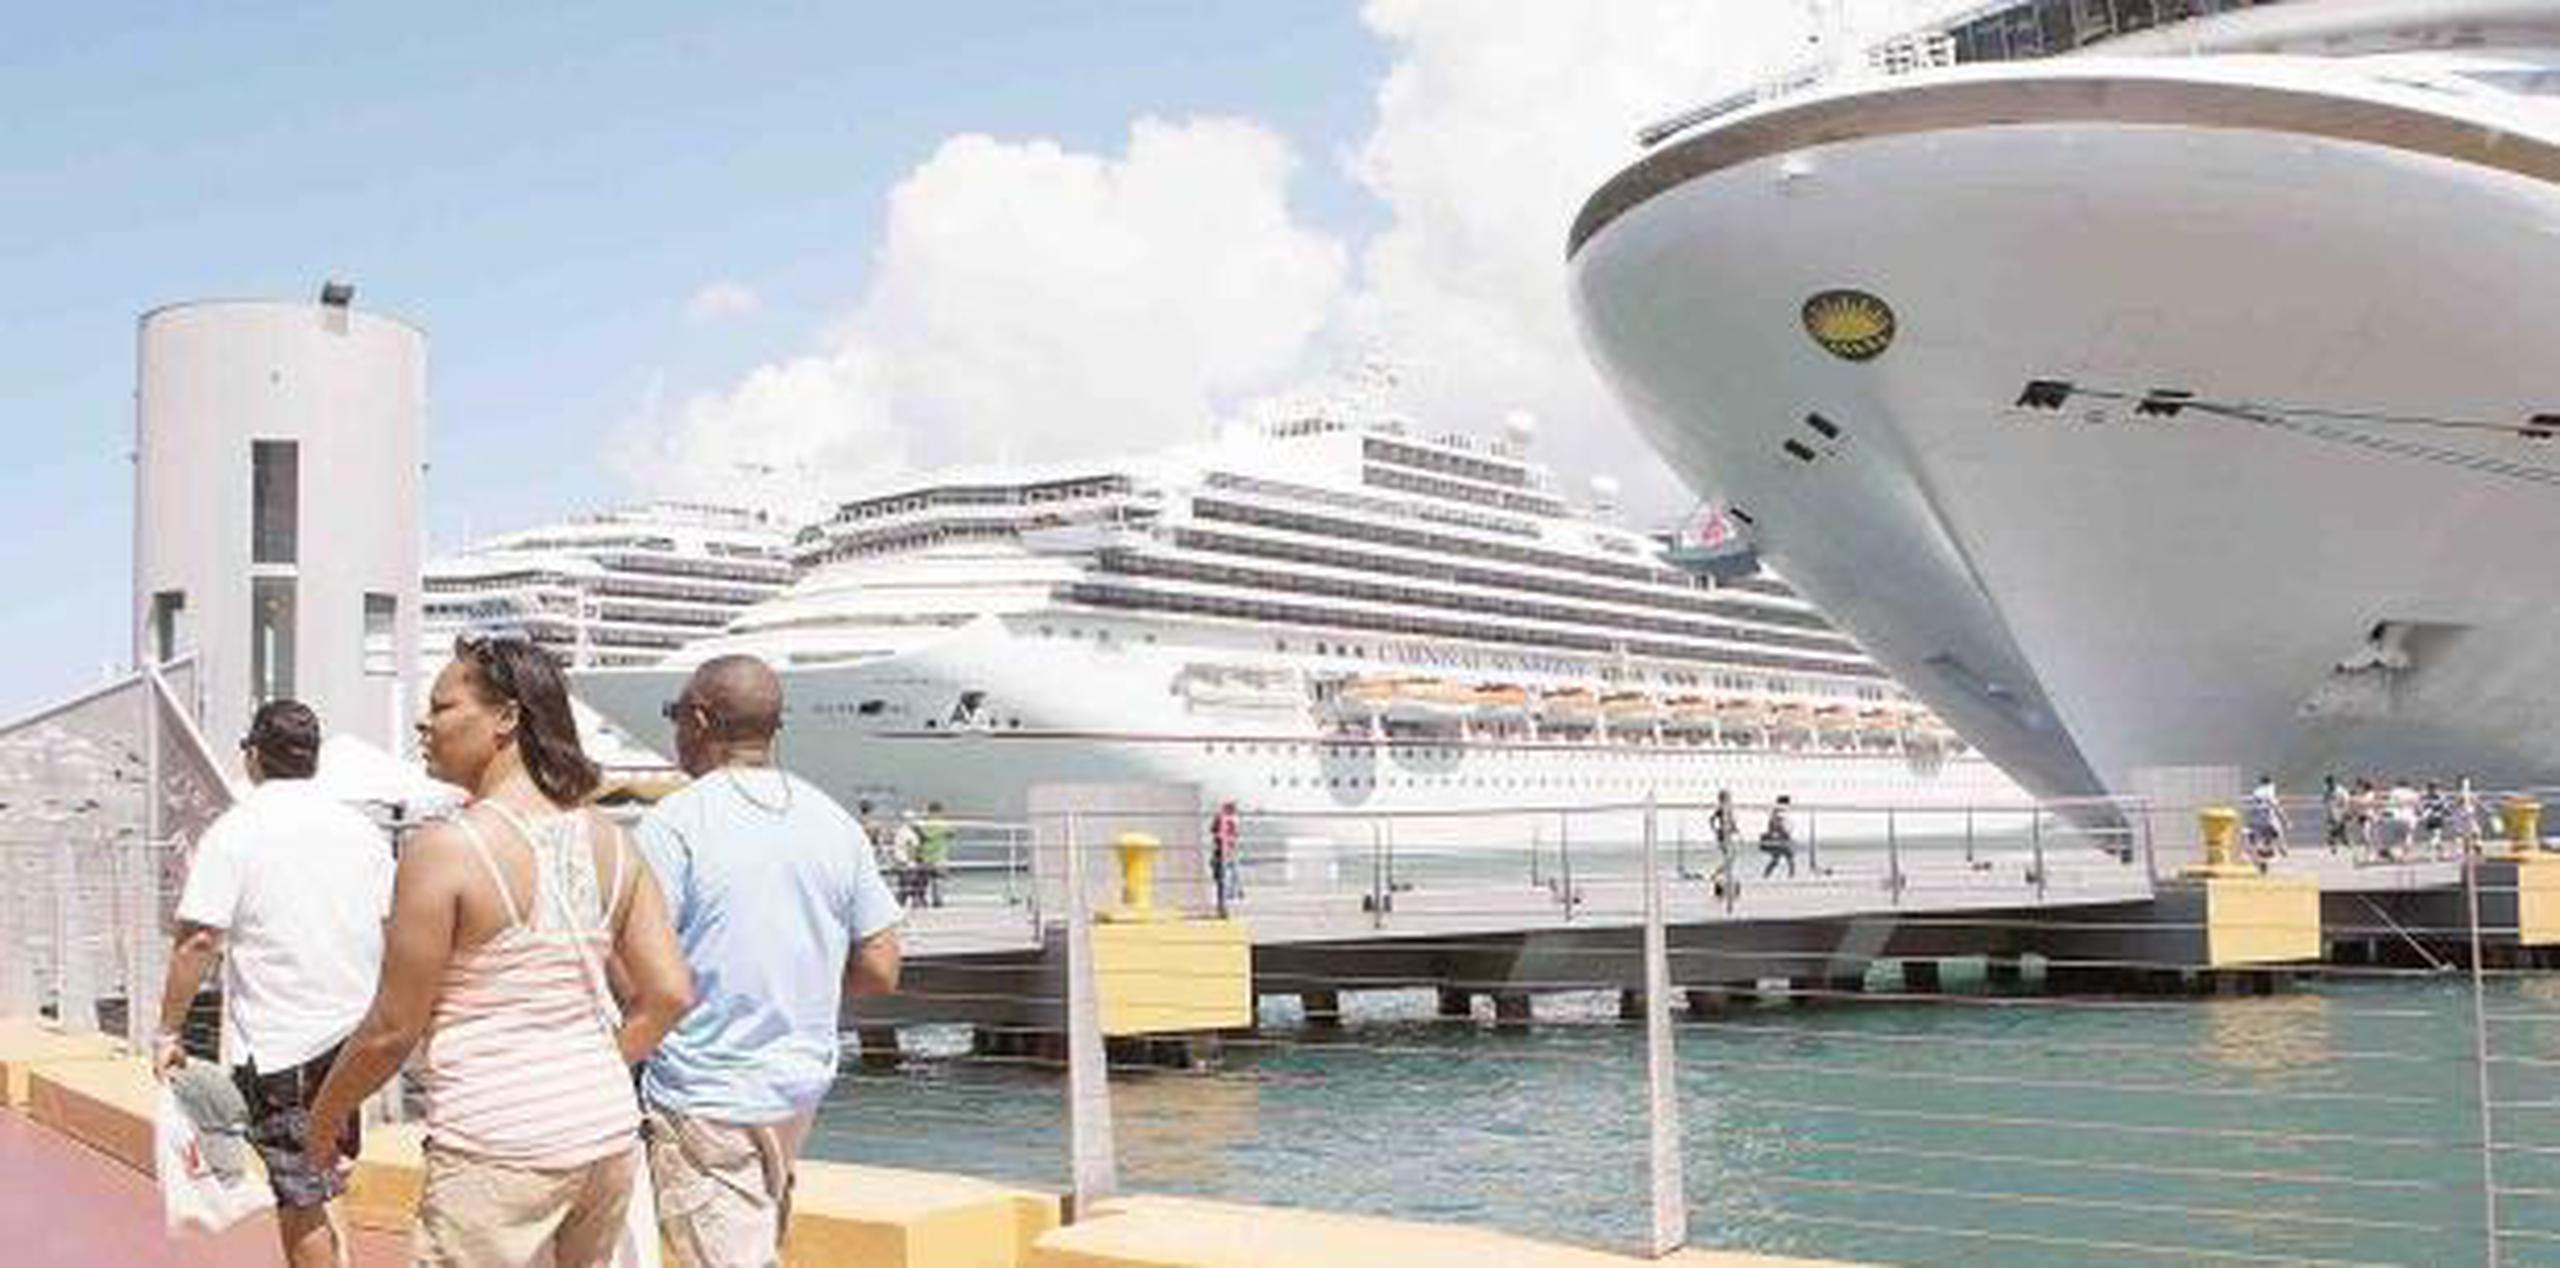 Se estima que Puerto Rico cerrará el 2018 con sobre 1.7 millones de turistas de cruceros, lo que romperá el récord anterior de 1.5 millones de cruceristas, establecido en el 2015. (archivo)